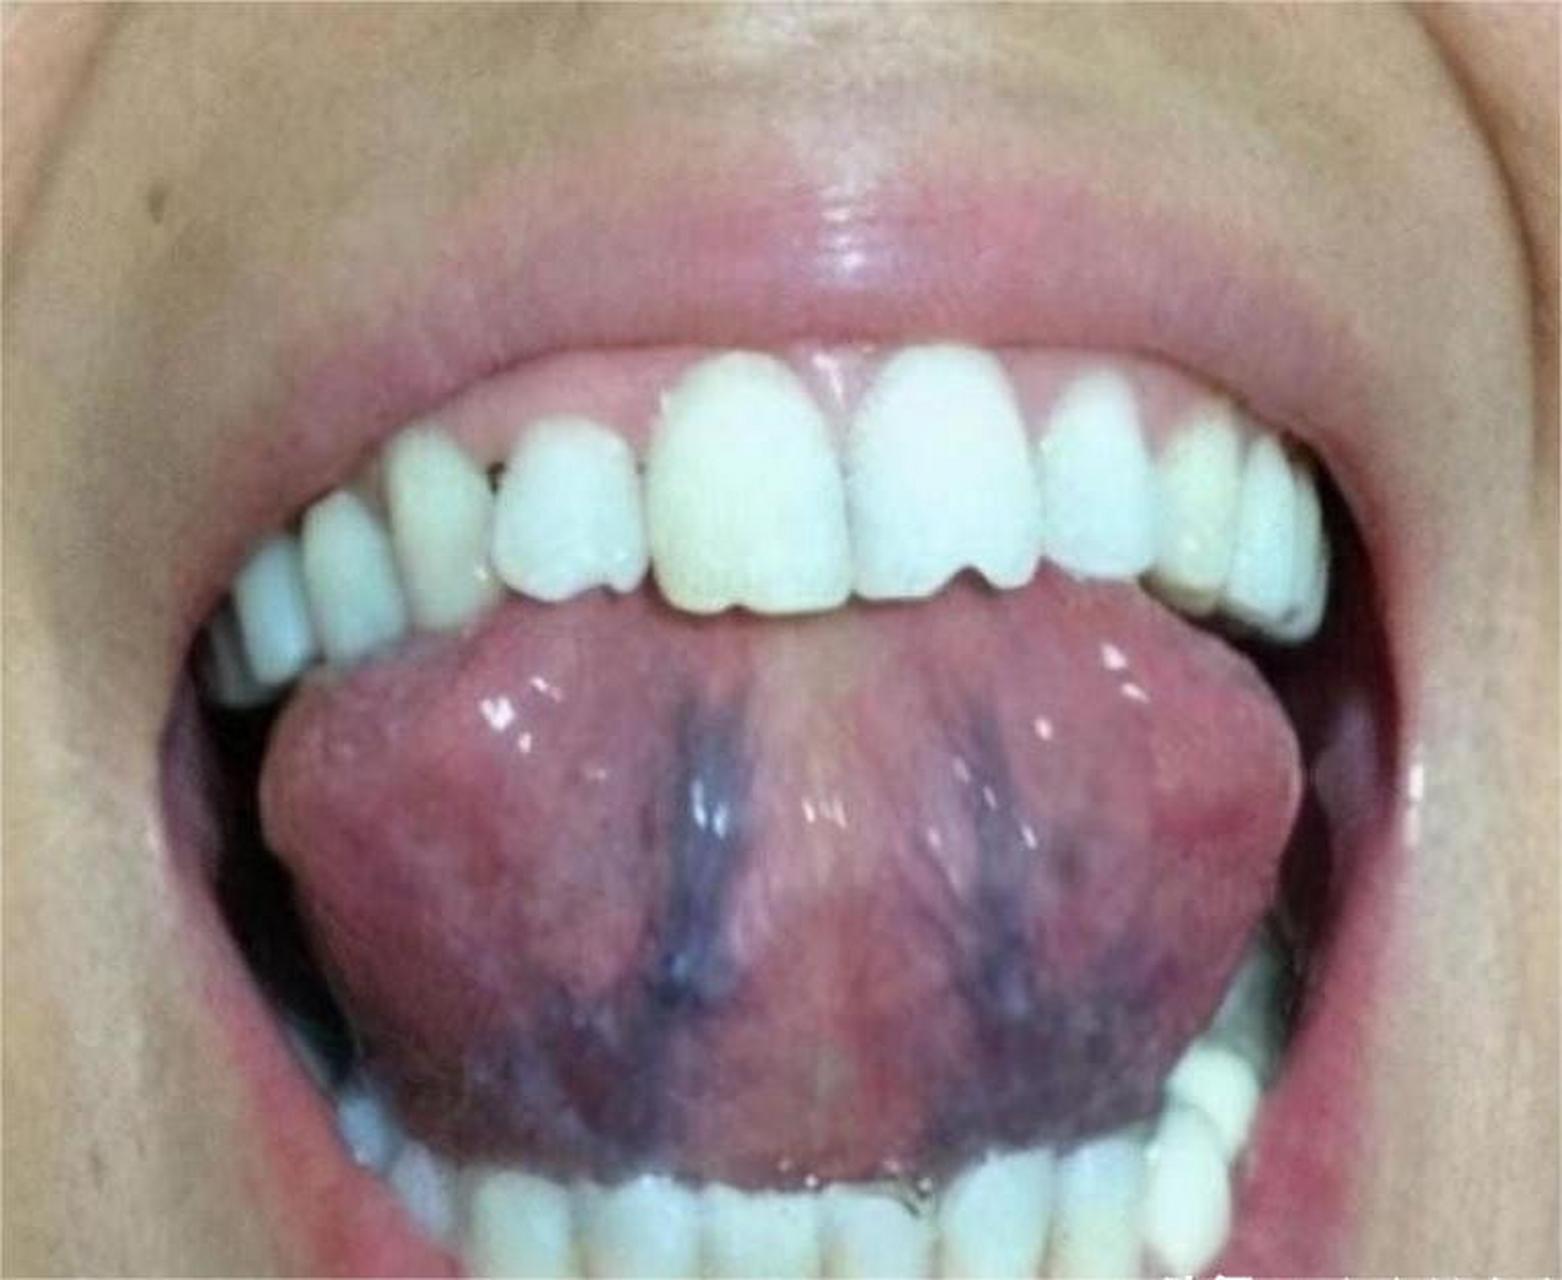 舌下青筋又粗又黑,这可能是以下3处地方堵塞导致的:  第一肝经淤堵